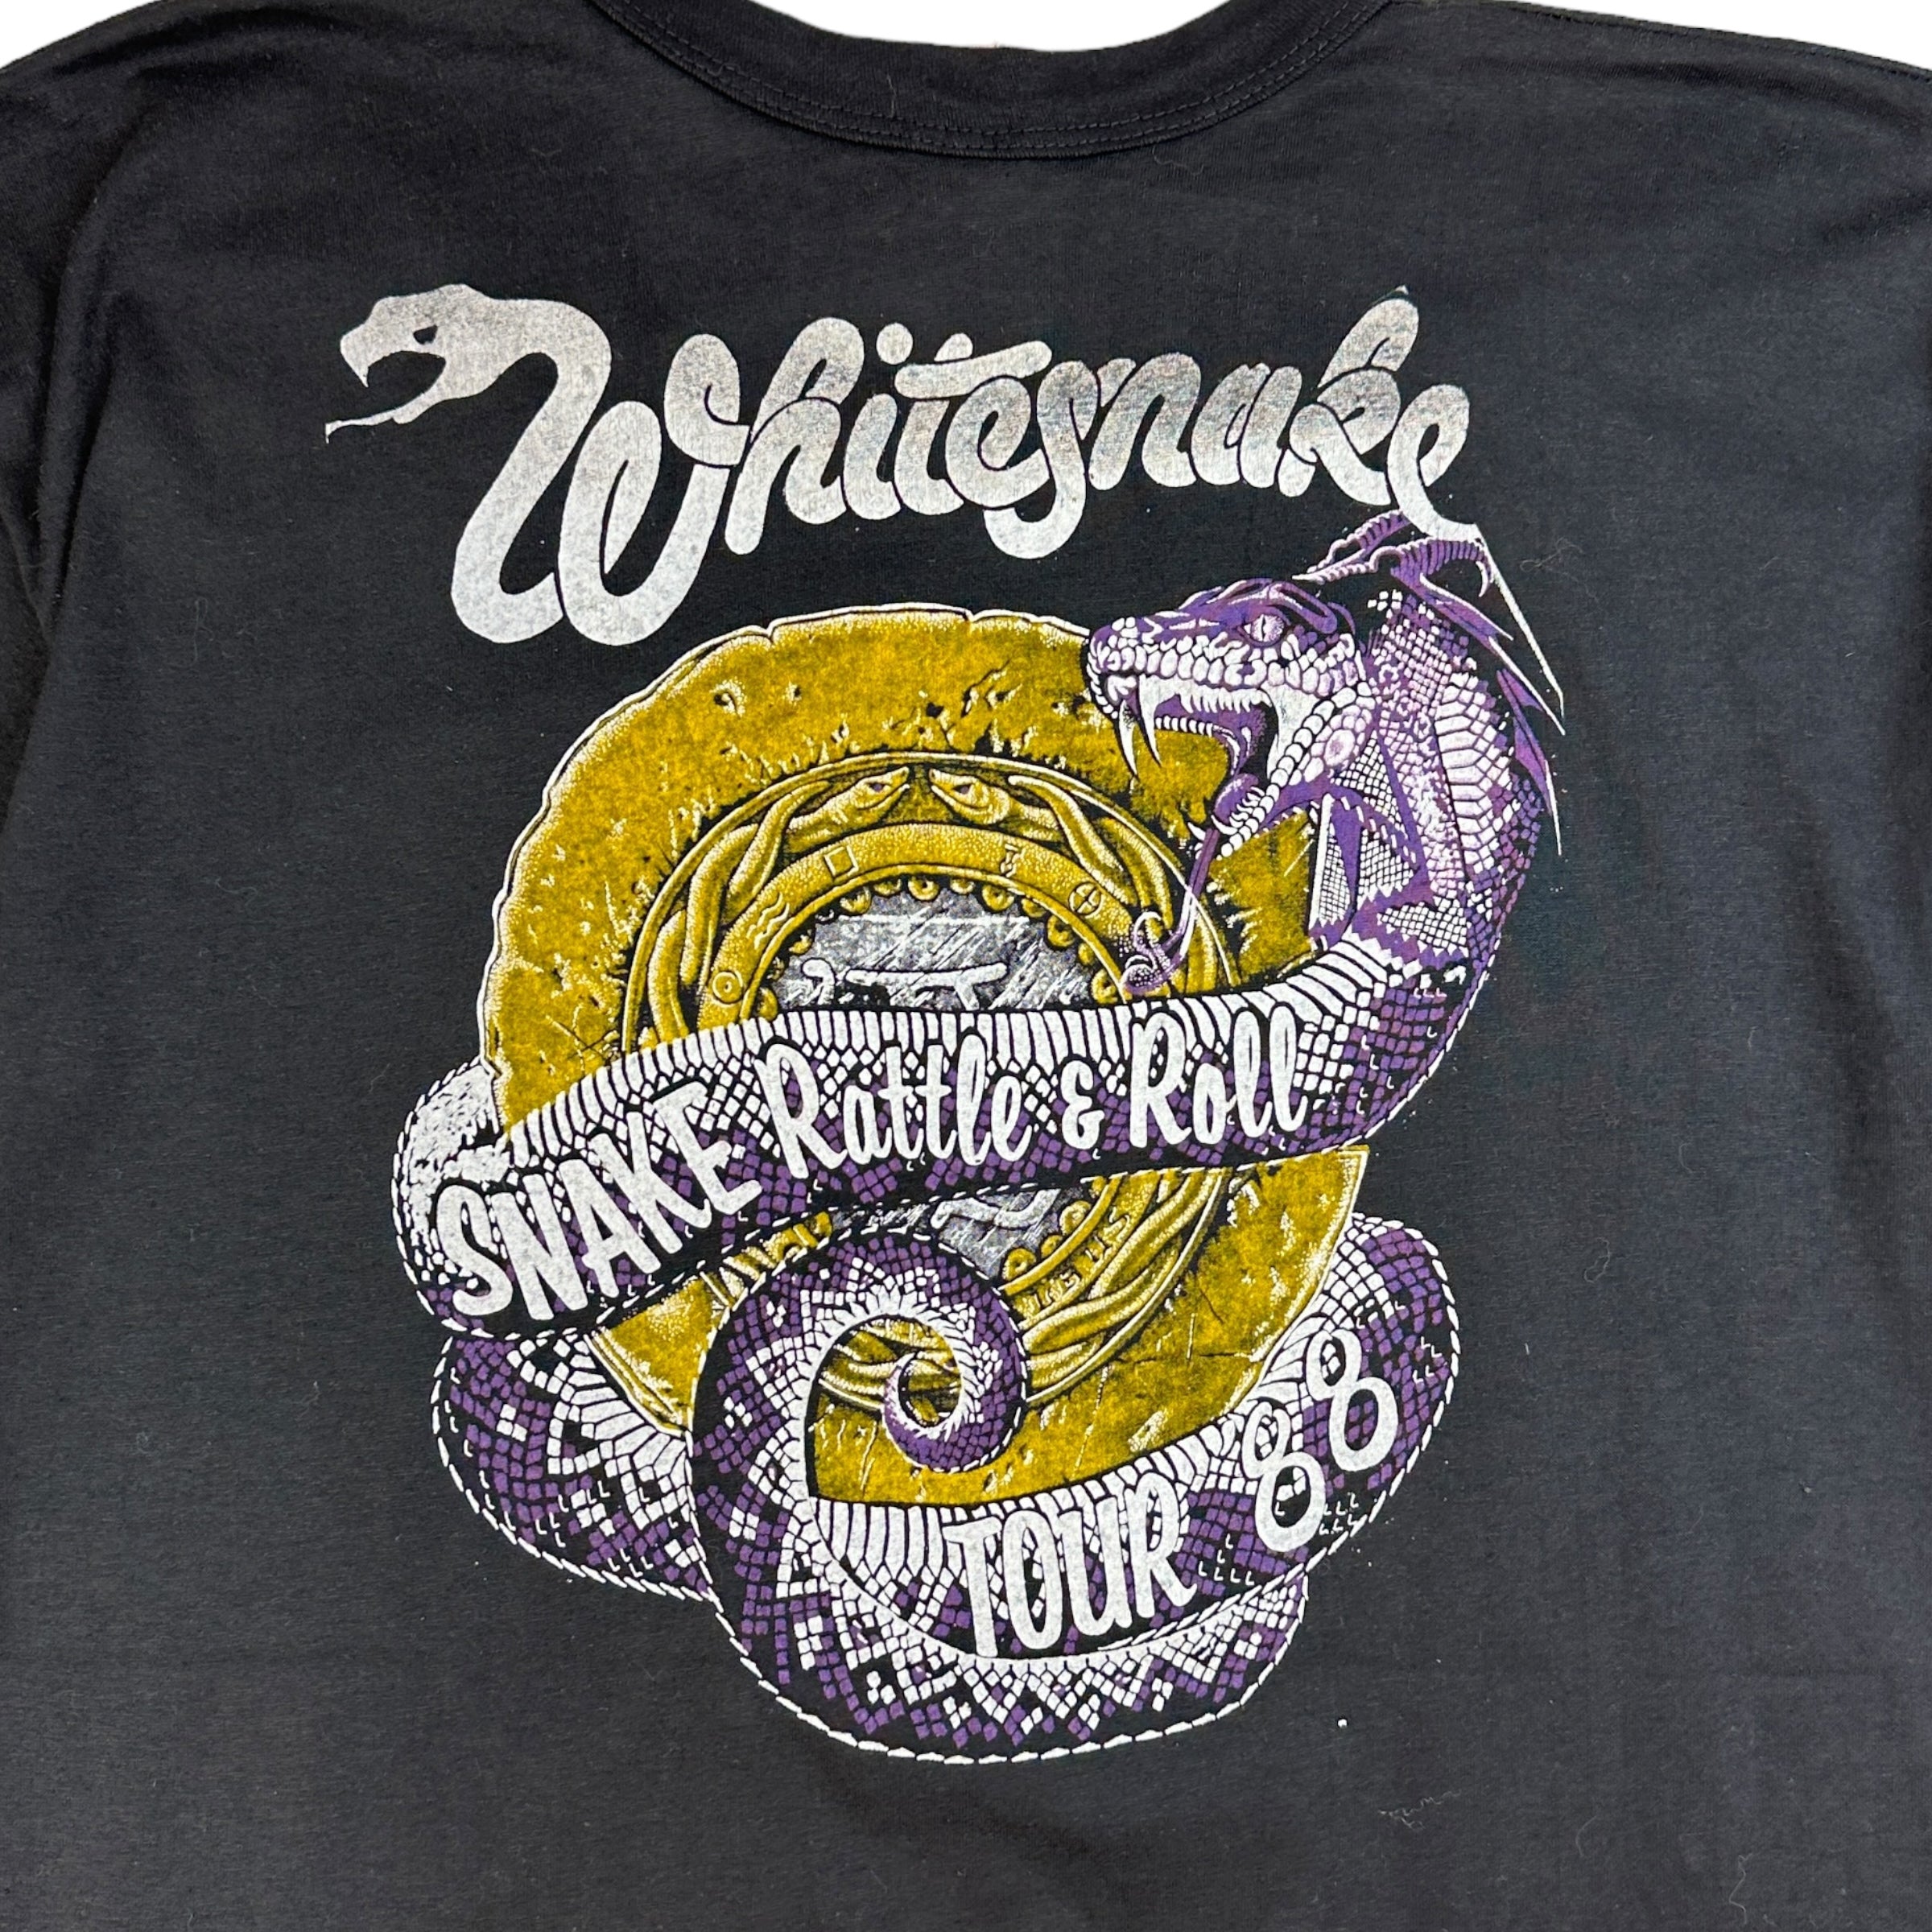 1988 White Snake Snake Rattle & Roll Concert T-Shirt